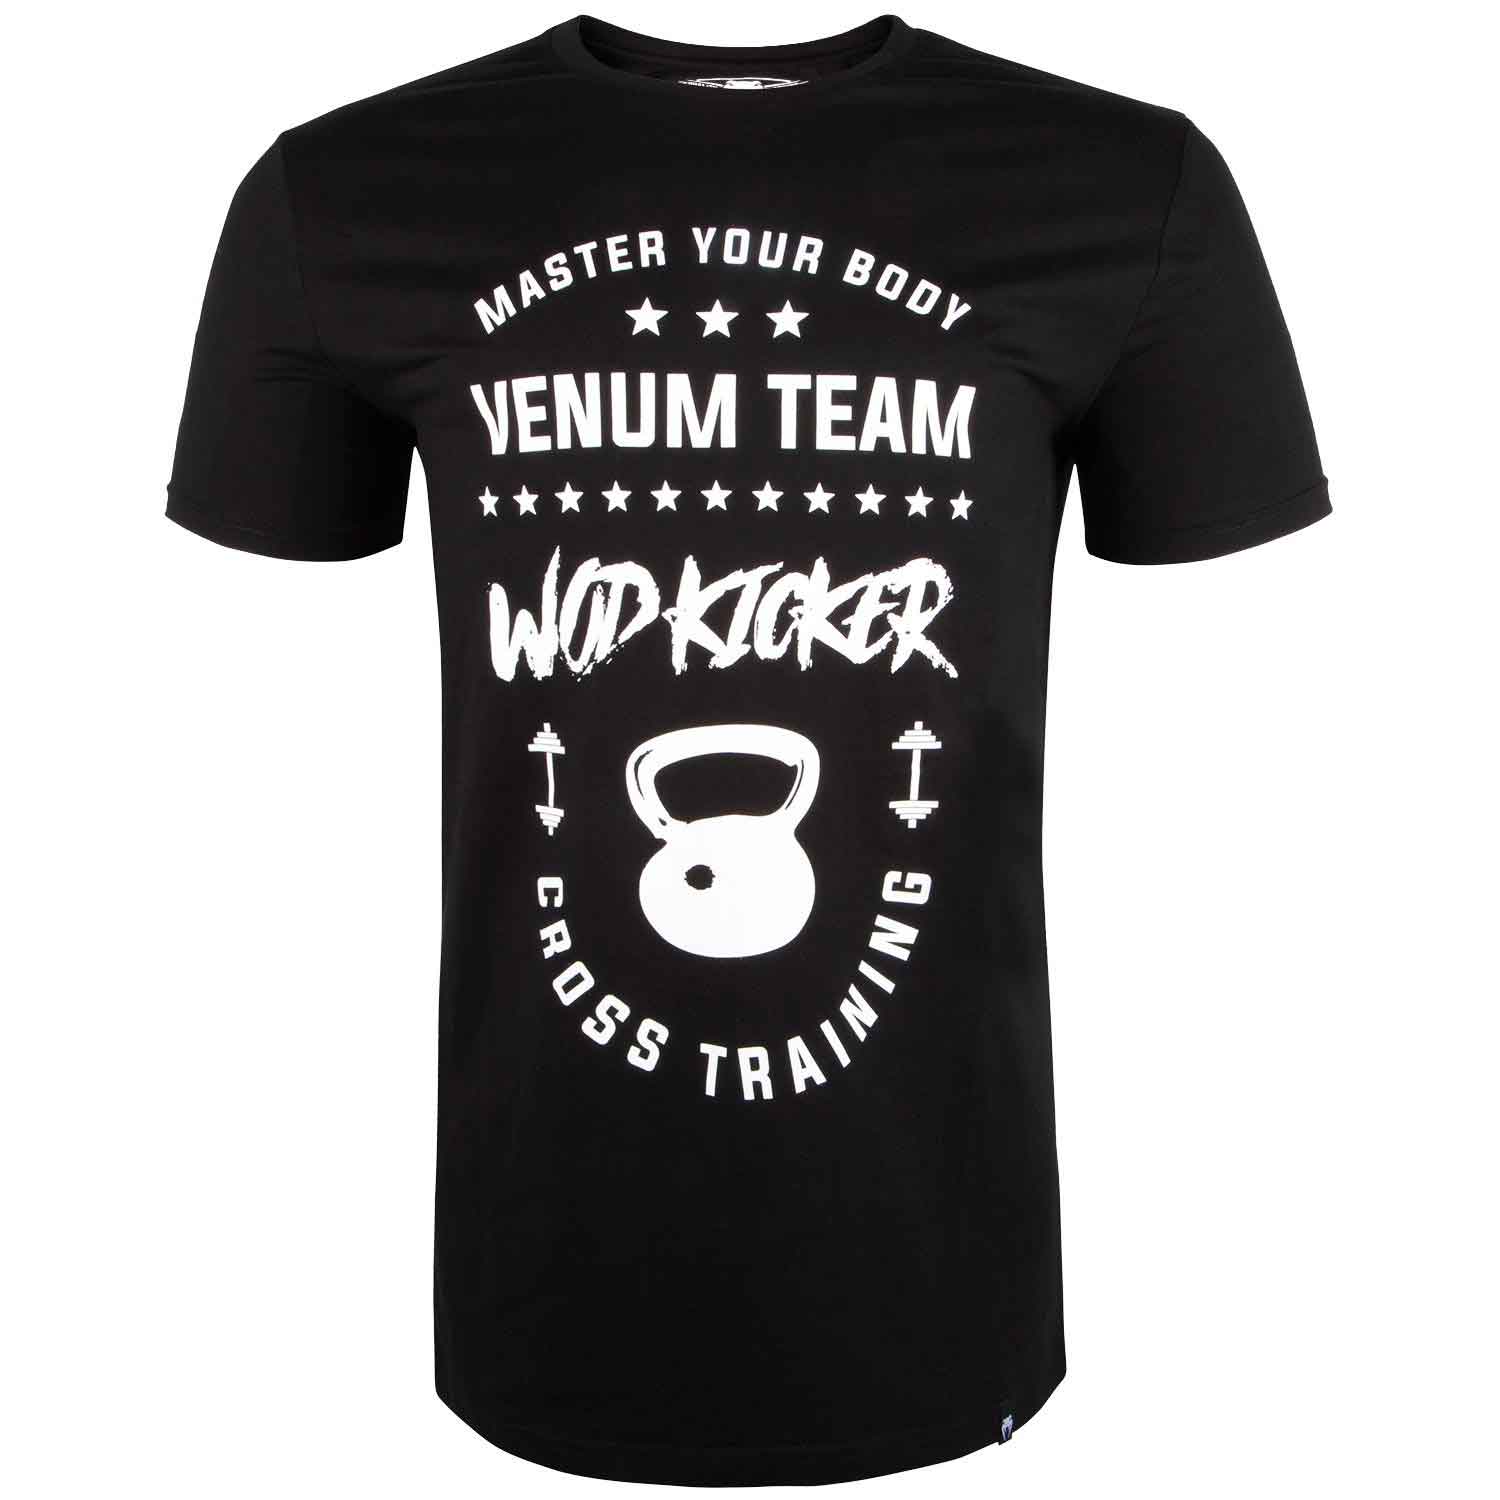 VENUM Tシャツ WOD KICKER(黒/白)